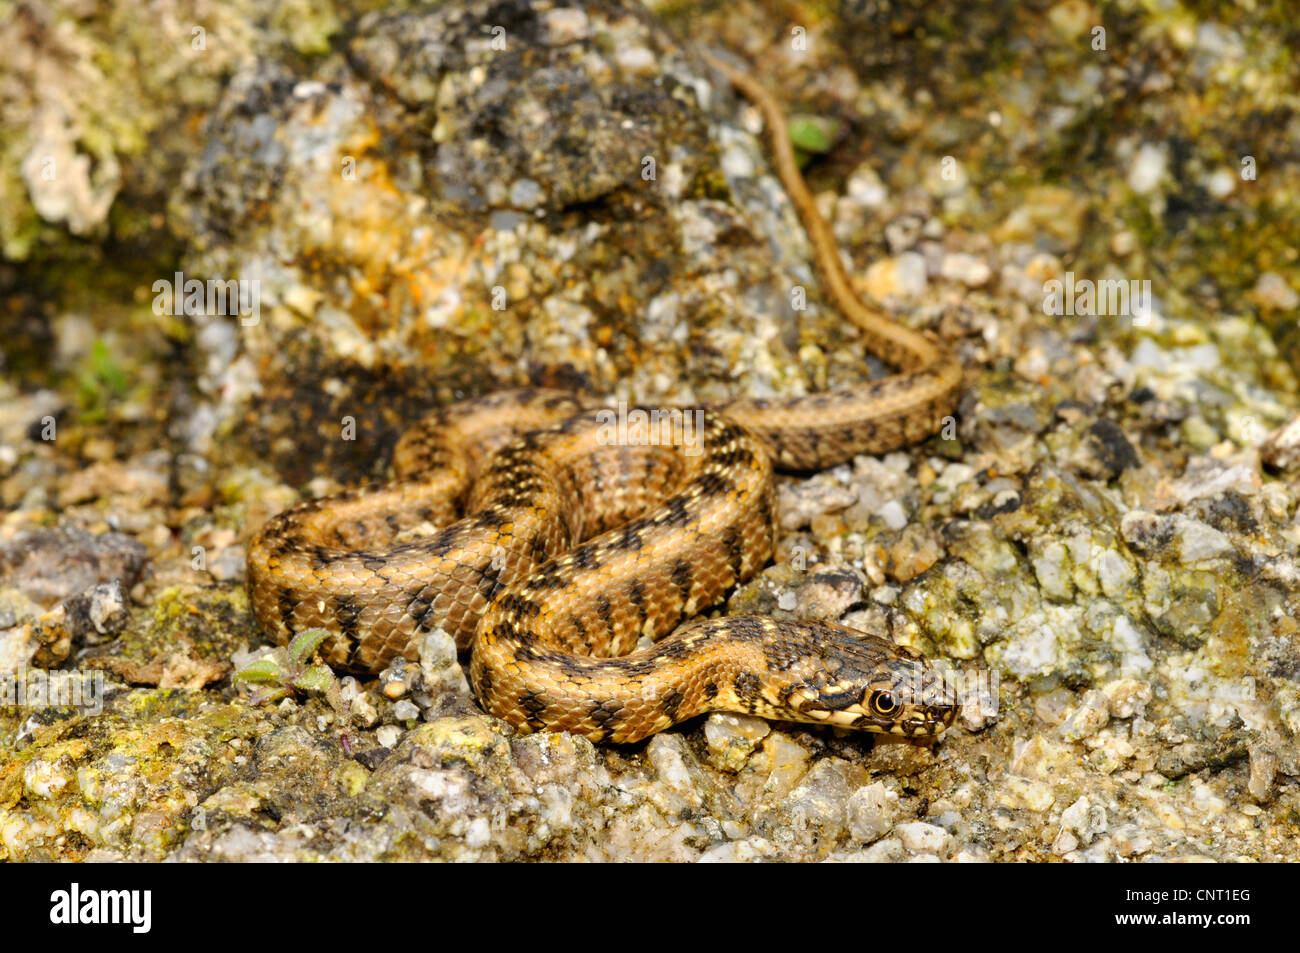 Viperine snake, viperine biscia dal collare (natrix maura), capretti, Spagna, Katalonia Foto Stock